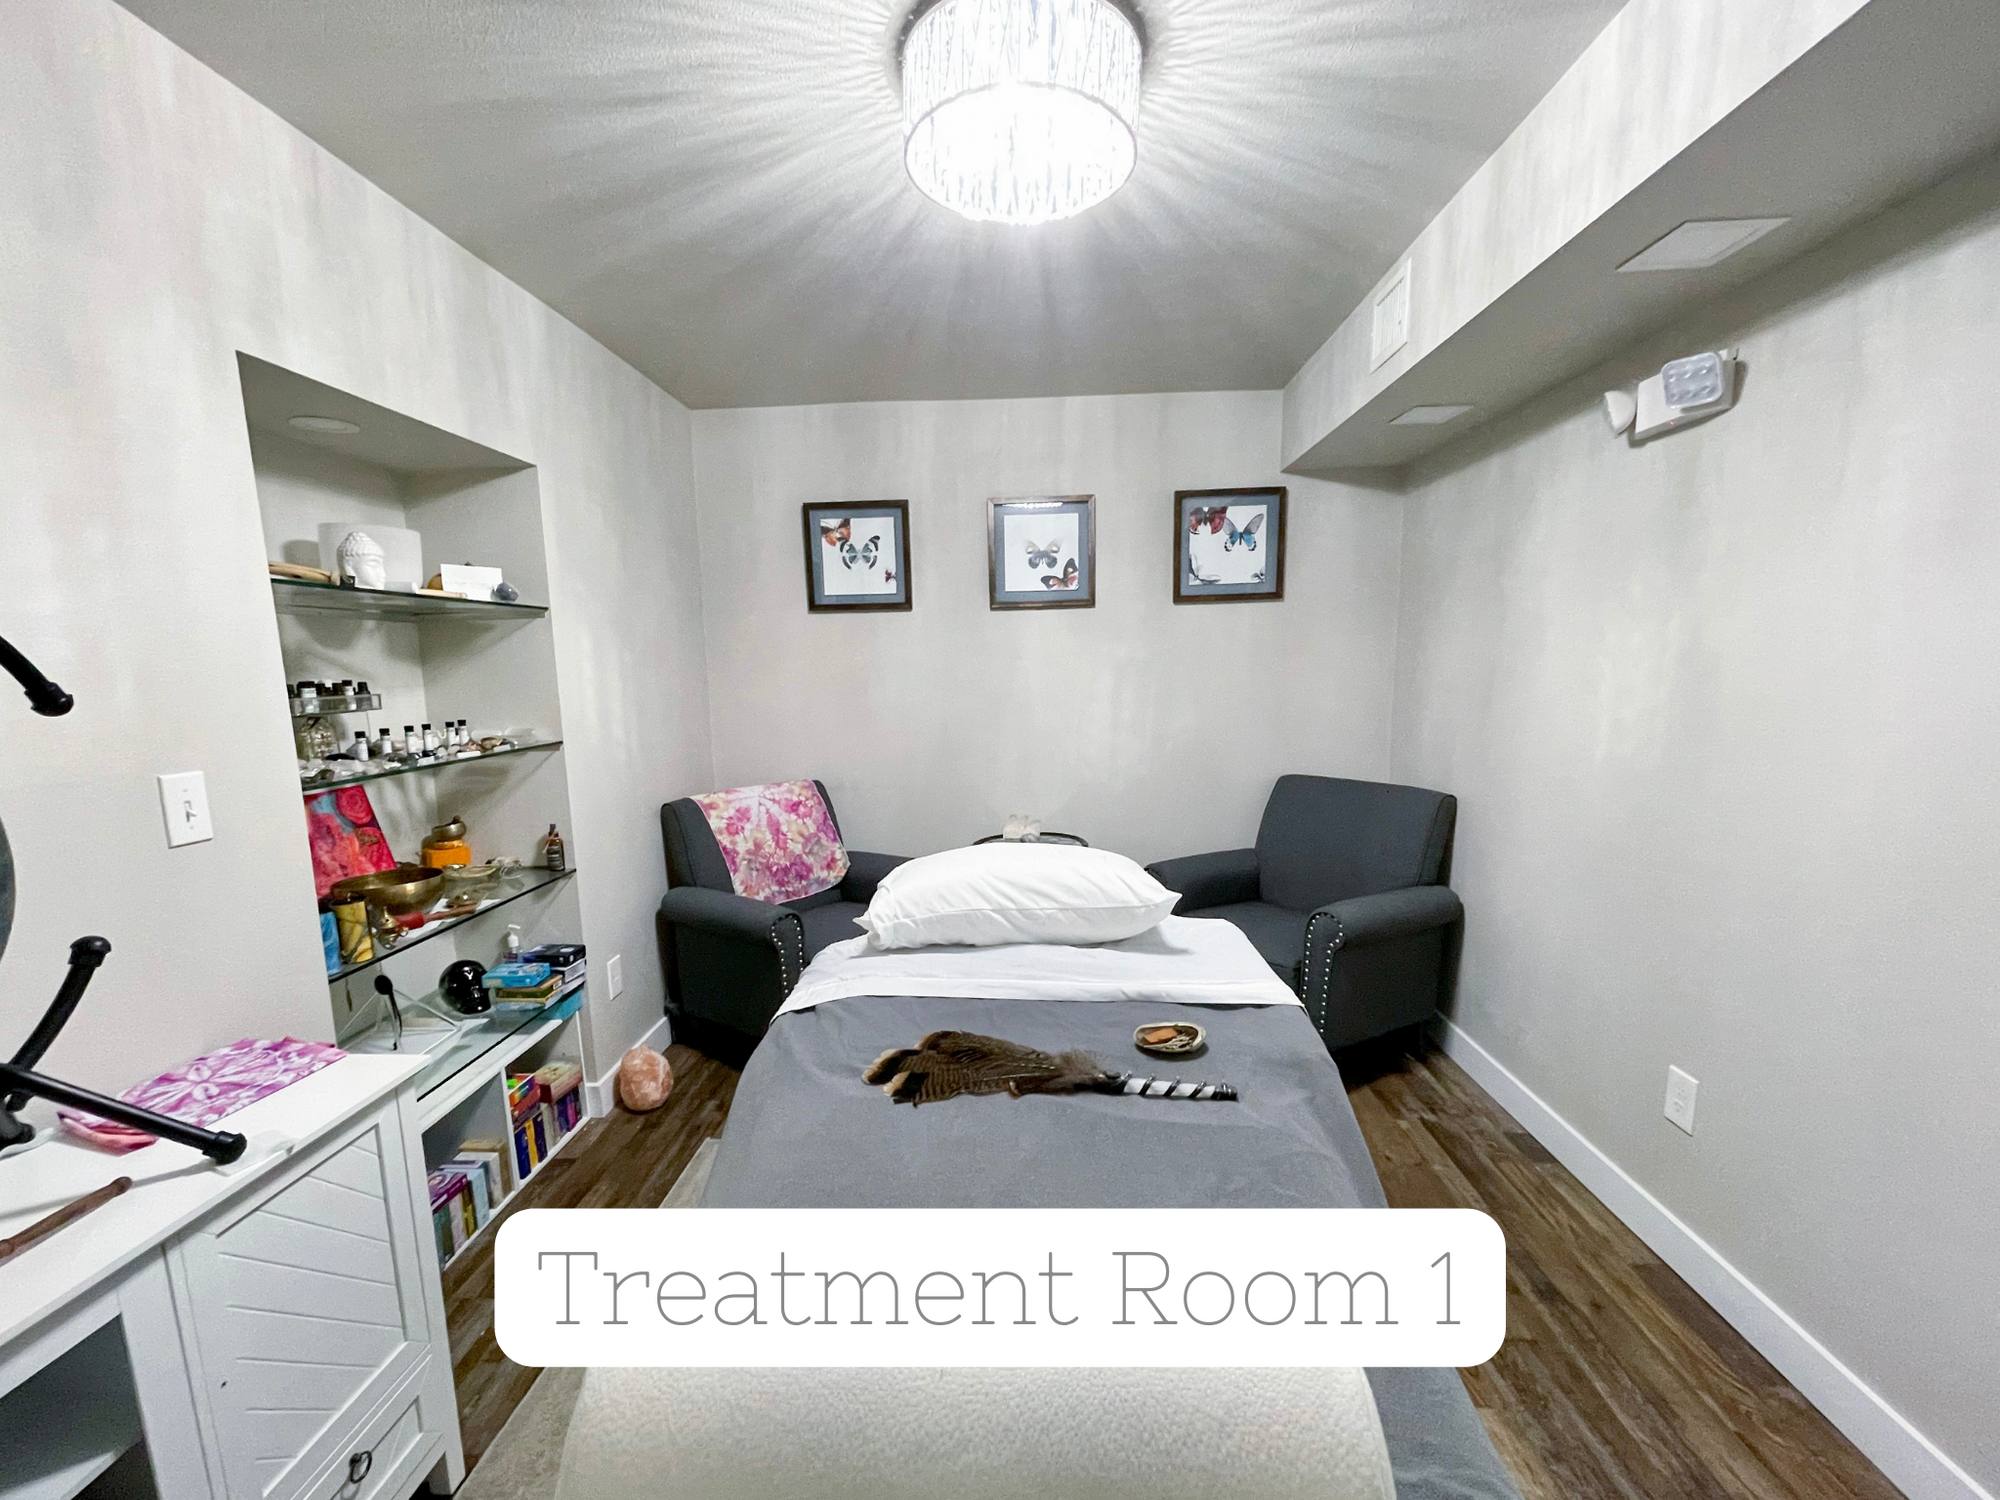 Weekend Treatment Room Rental - Room 1